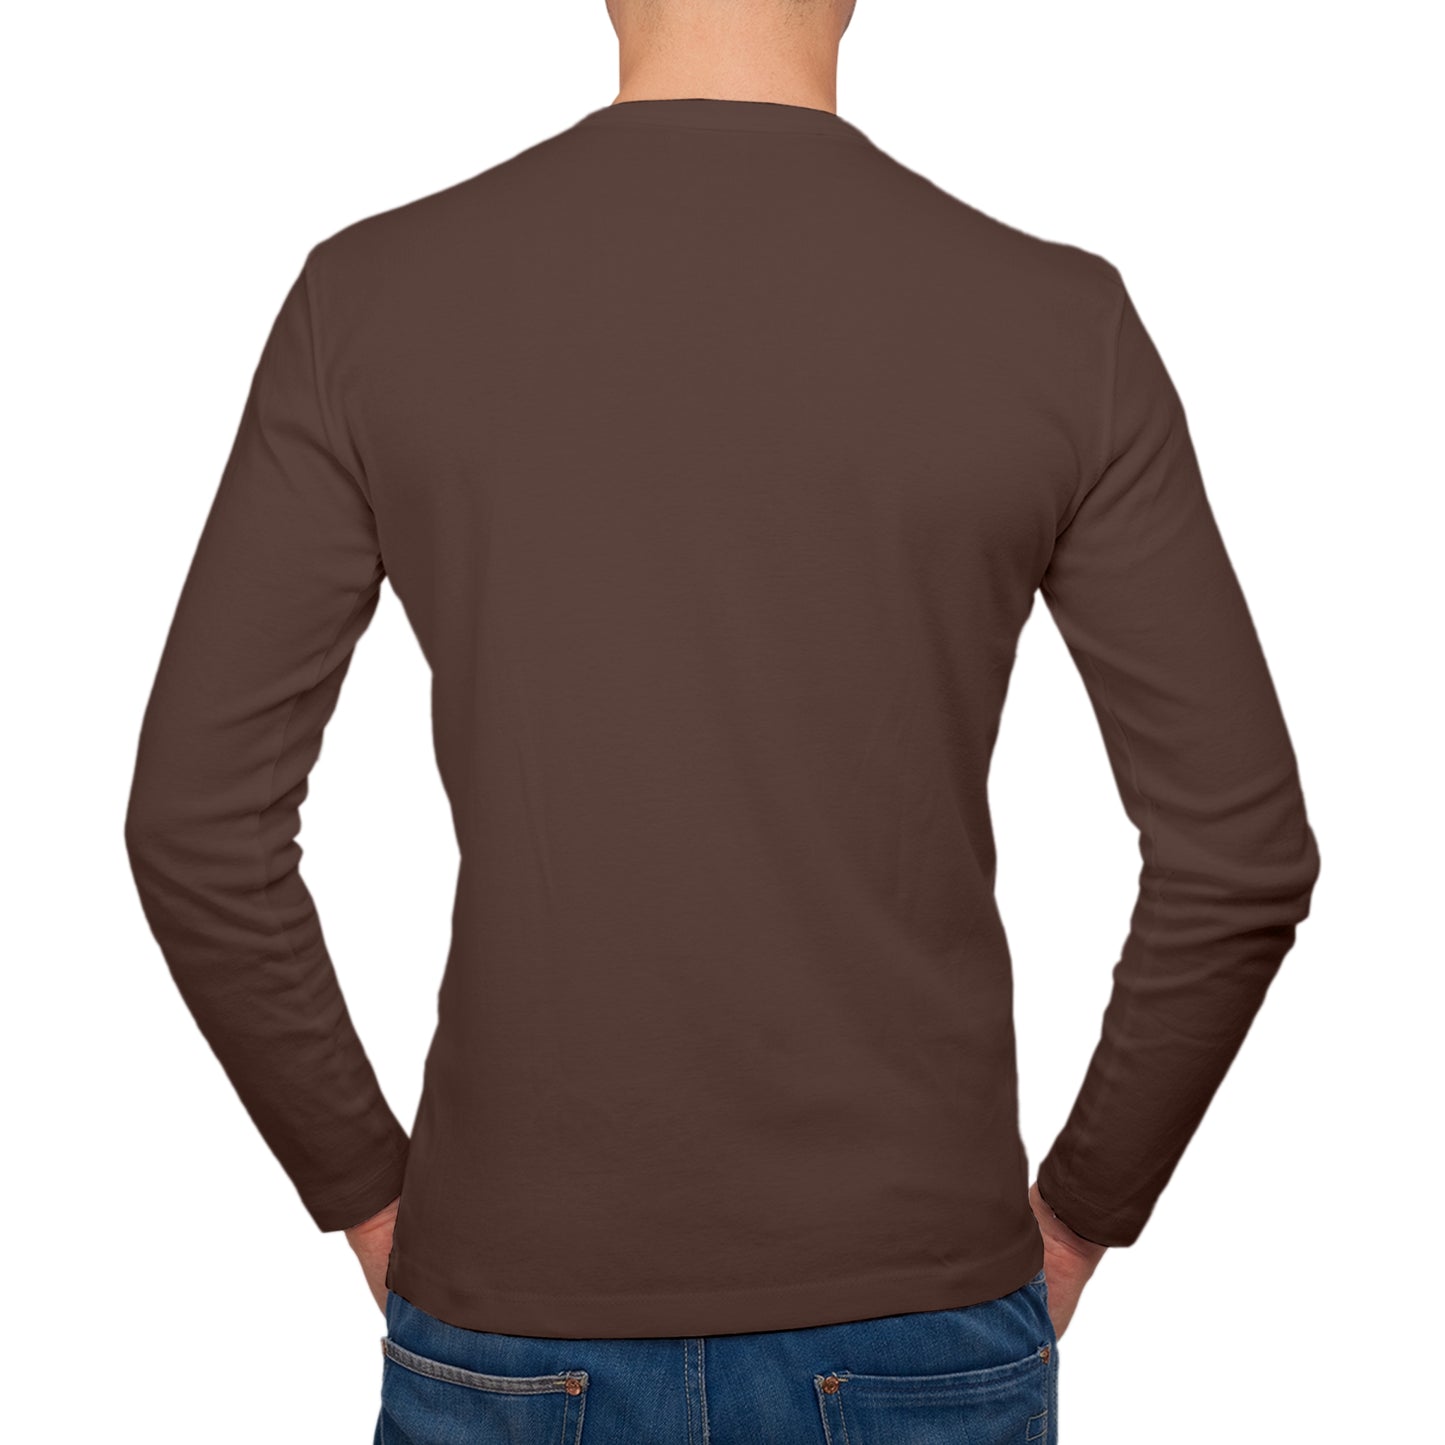 Full Sleeves Coffee Black T-Shirt For Men - FlyingCart.pk